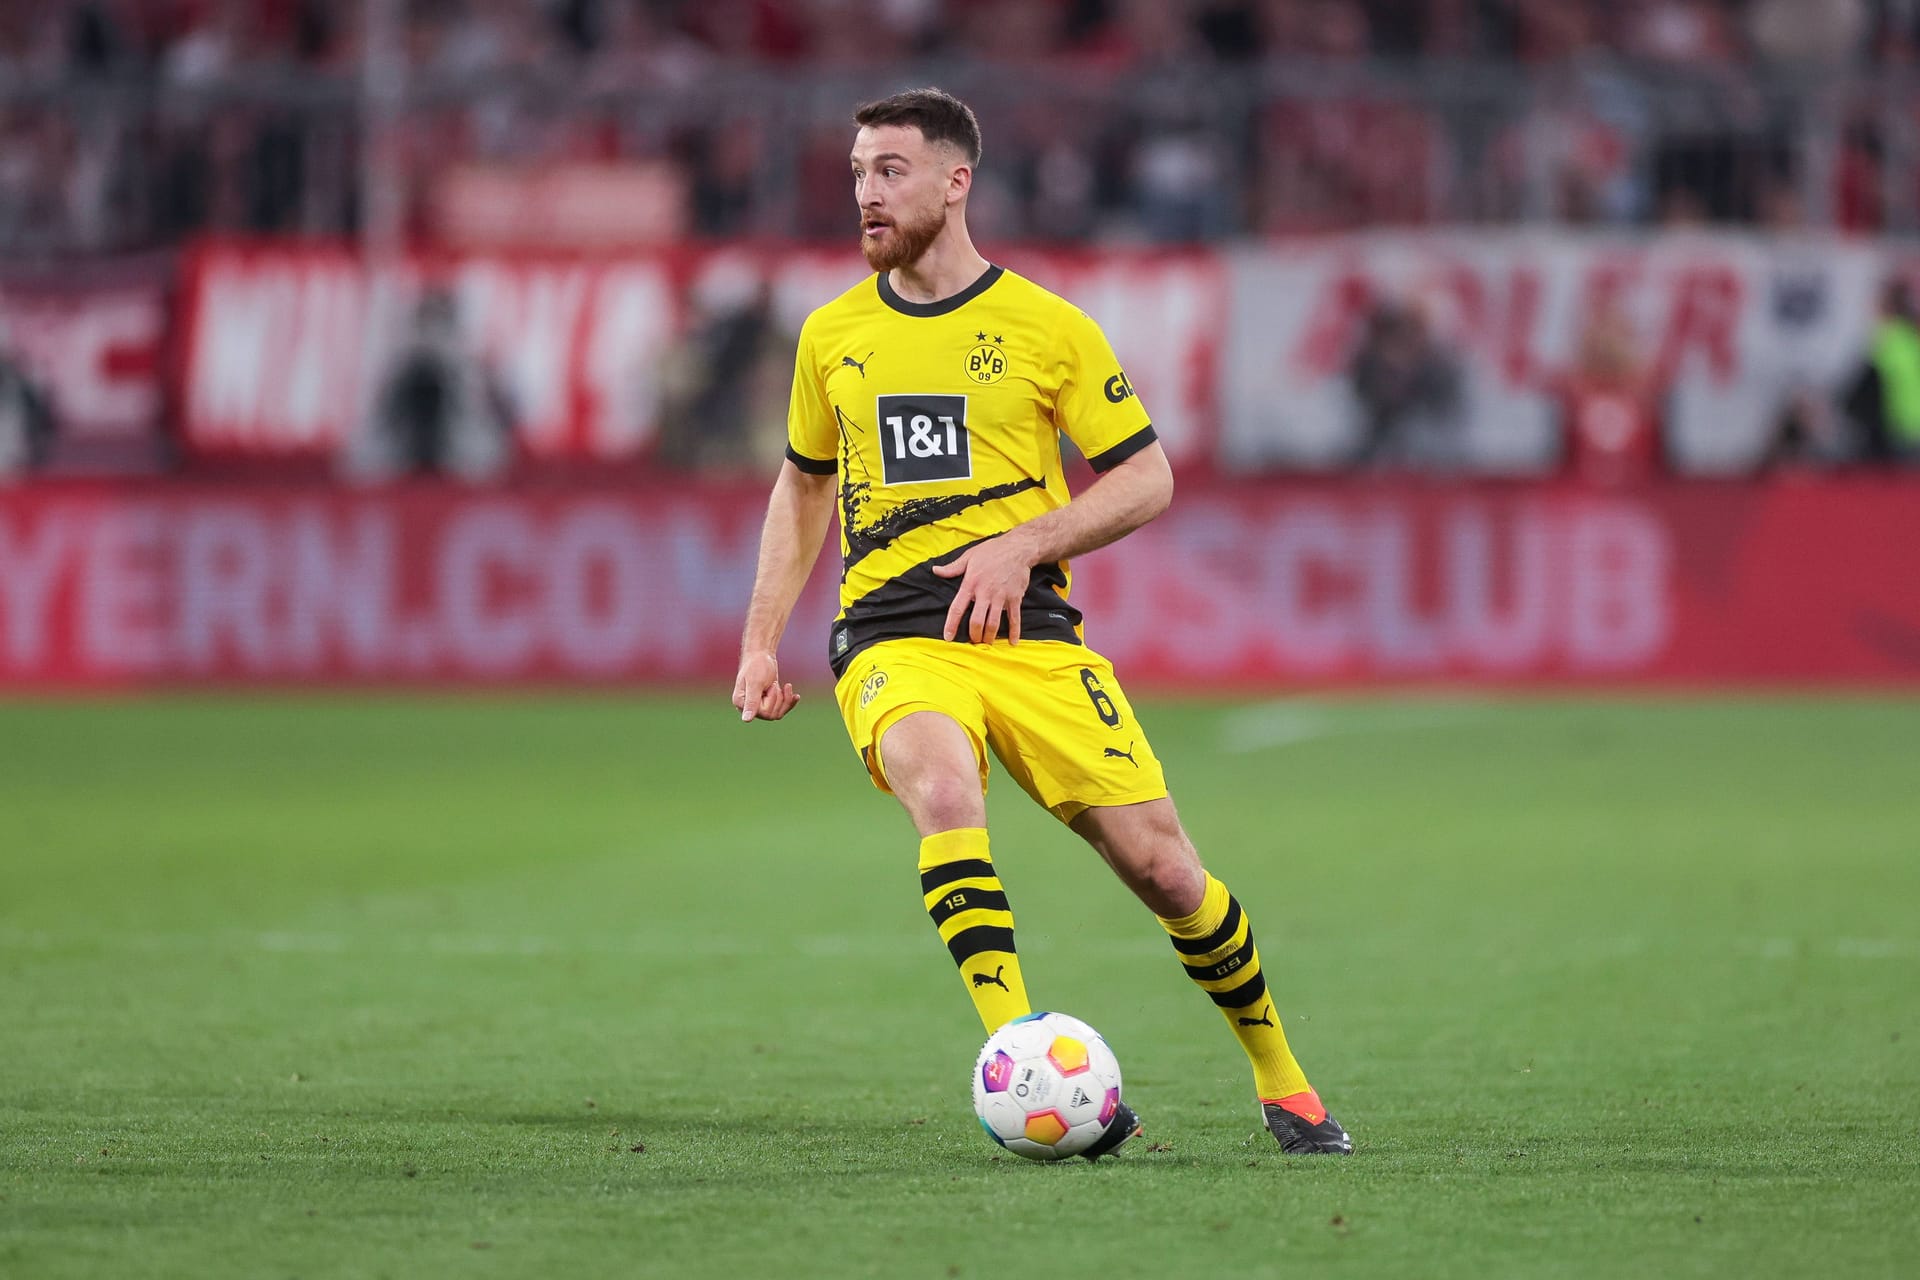 Salih Özcan (ab 68. Minute): Kam in eine gut organisierte Dortmunder Mannschaft. Gewann einen Ball an der Mittellinie (77.). Blieb ansonsten unauffällig und konnte nichts nach vorne kreieren. Note: 3